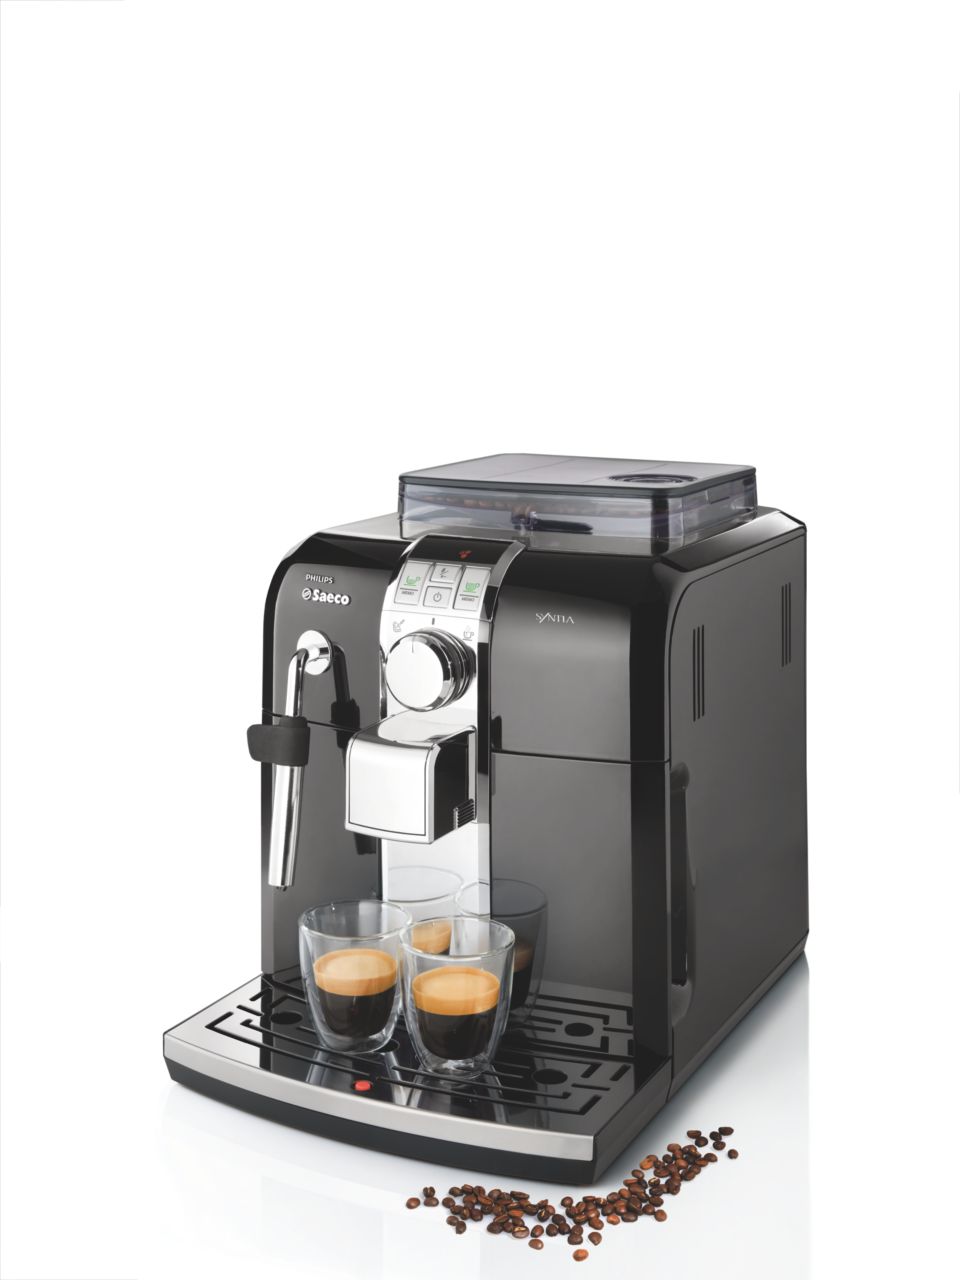 Philips Saeco Syntia Automatic Espresso Machine